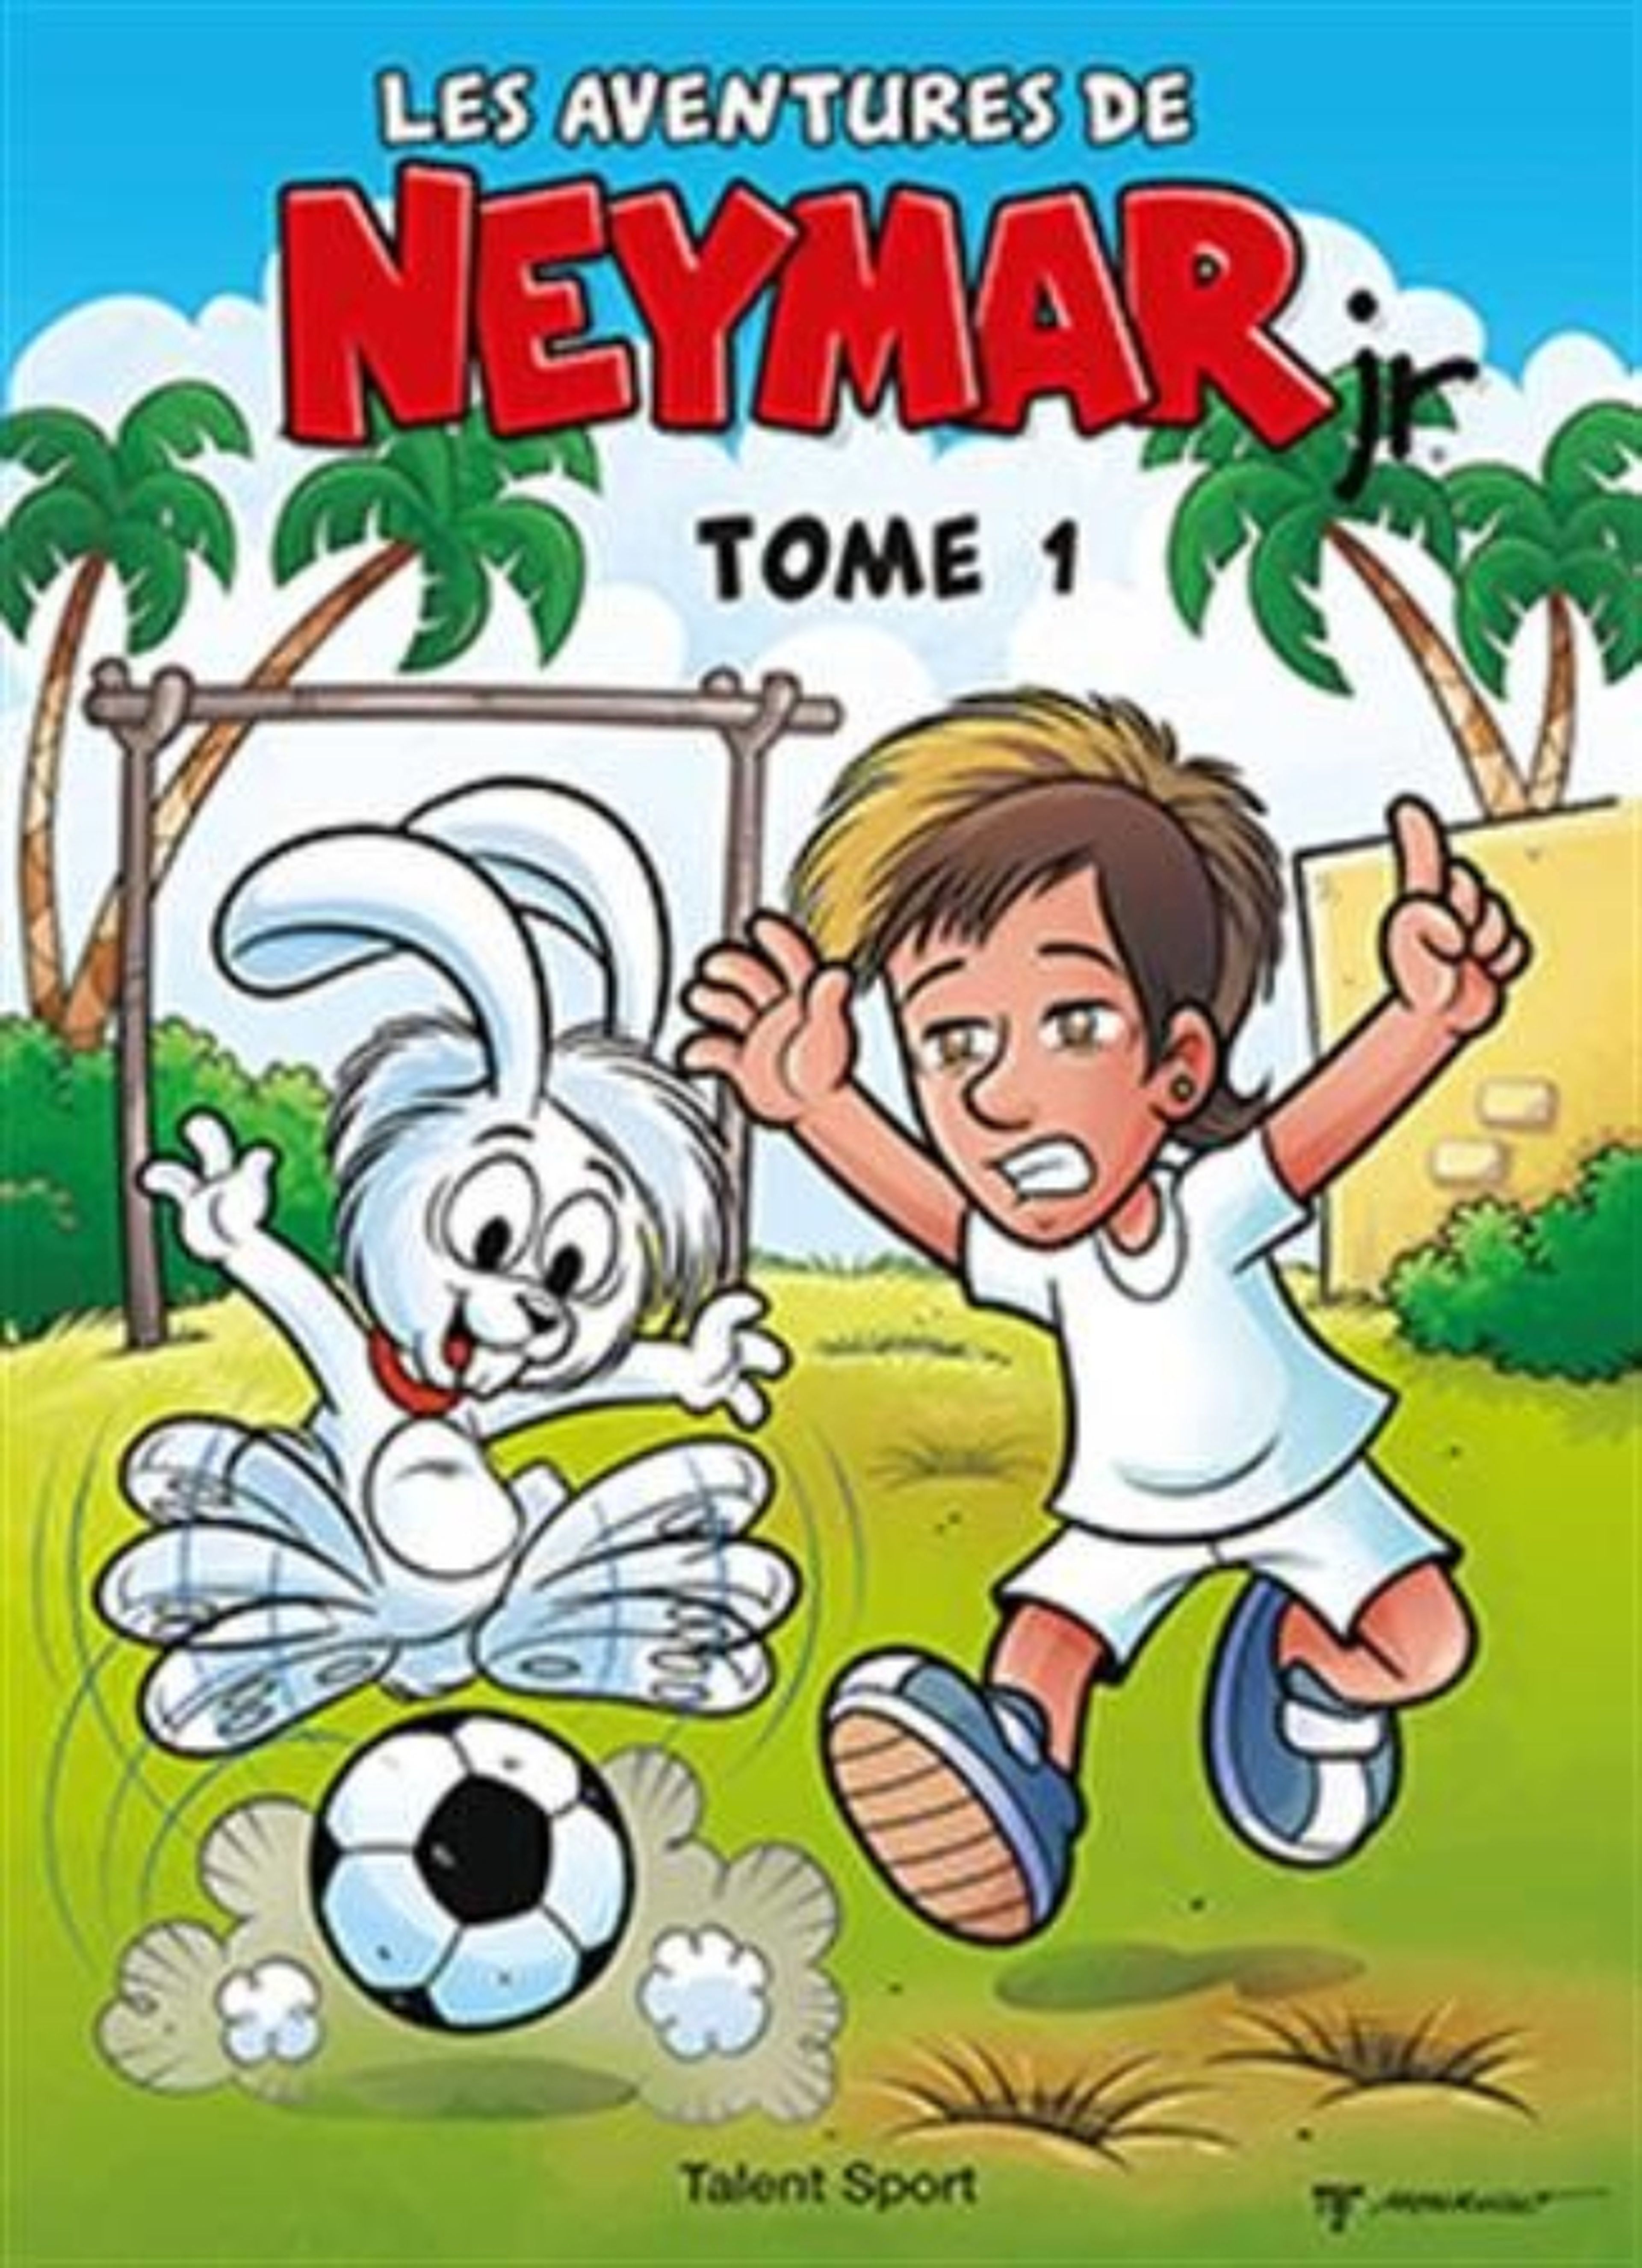 Portada de un cómic sobre Neymar de los Estudios Maurício de Sousa